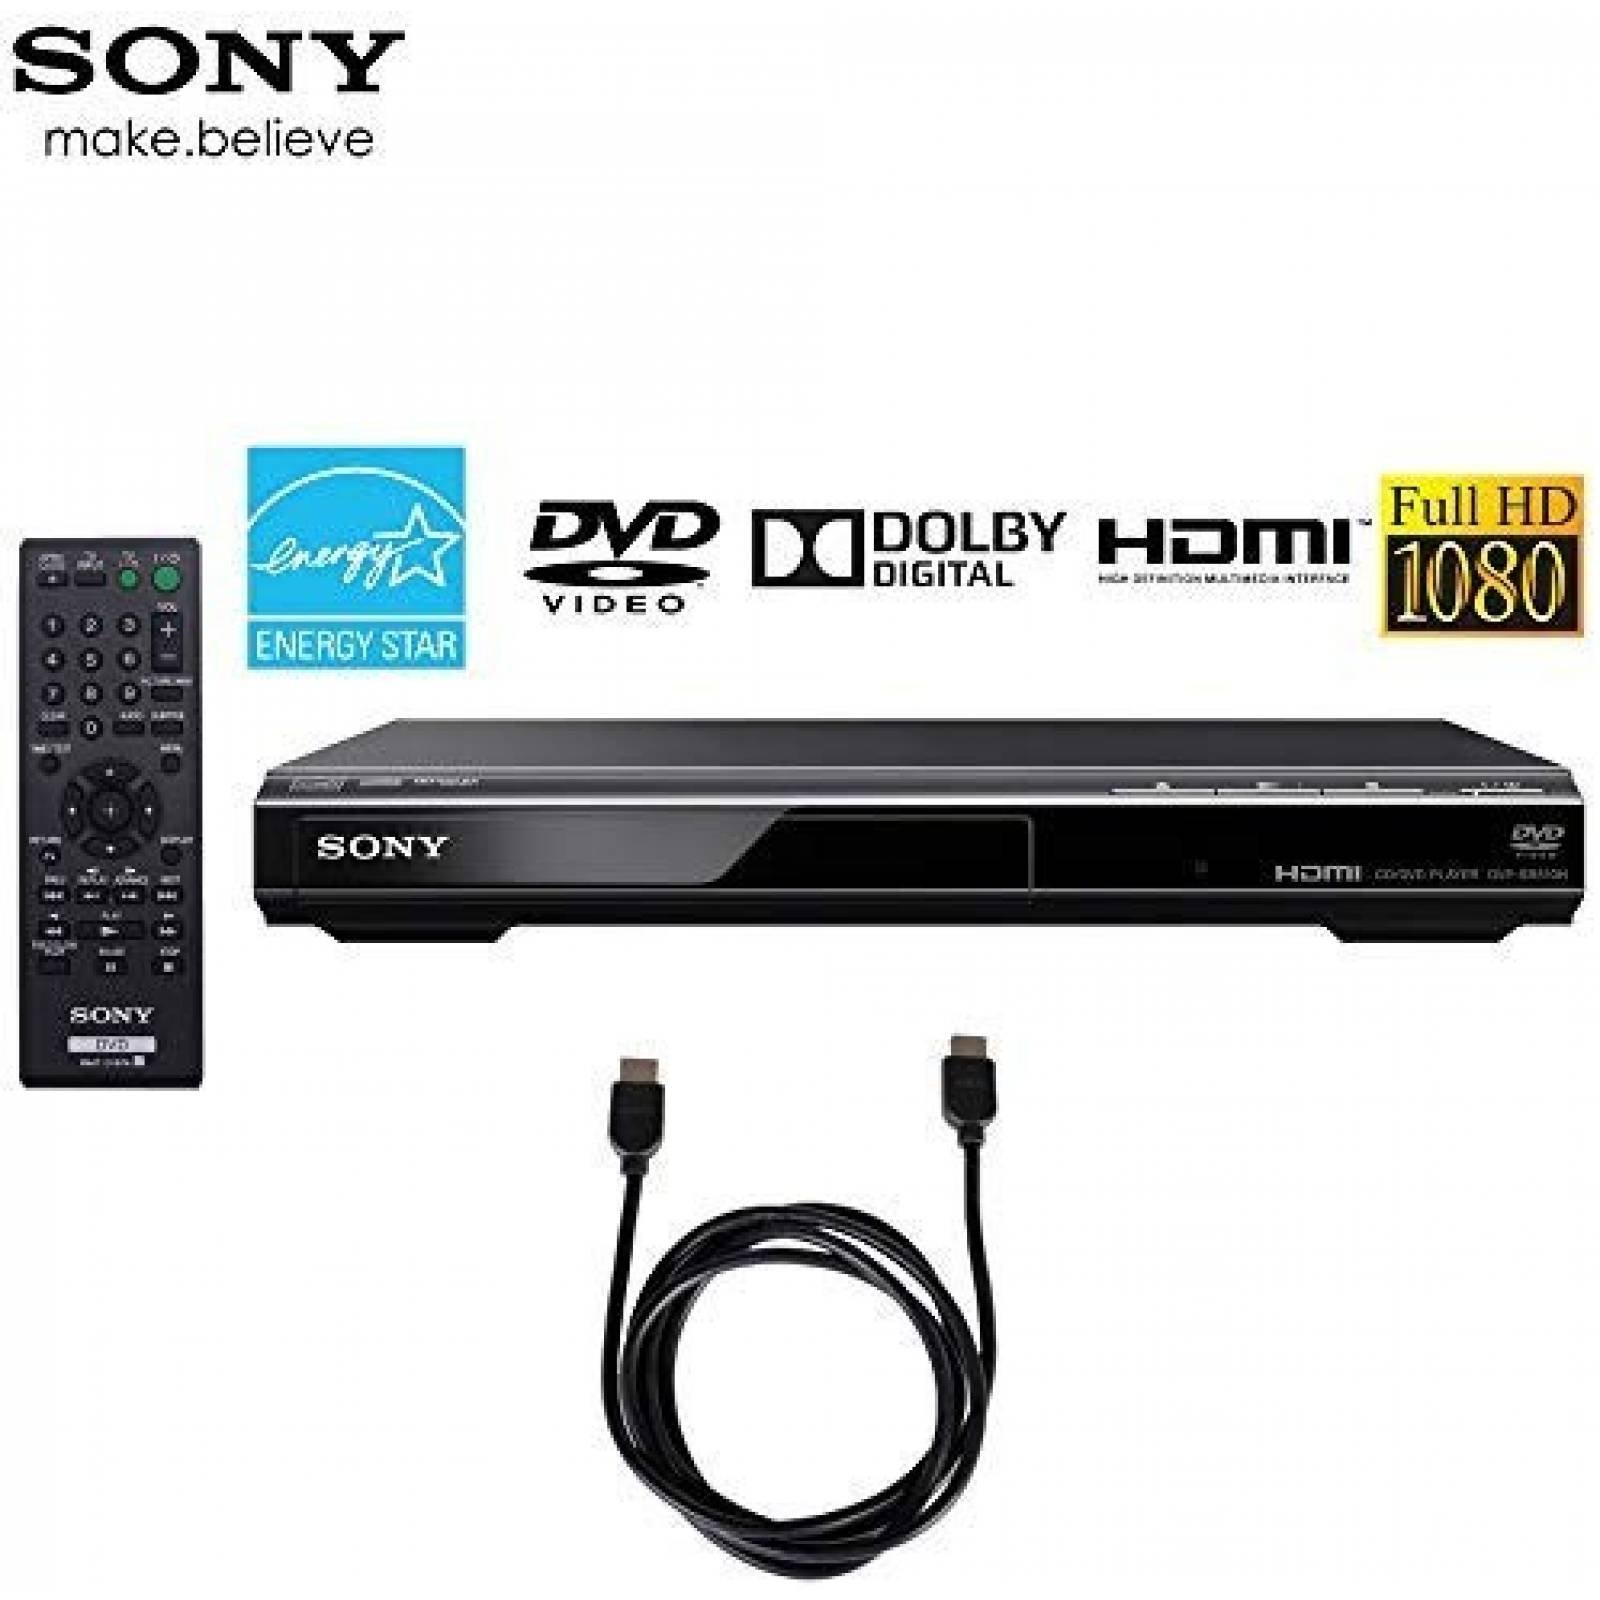 Reproductor de DVD Sony DVPSR510H con cable HDMI y control